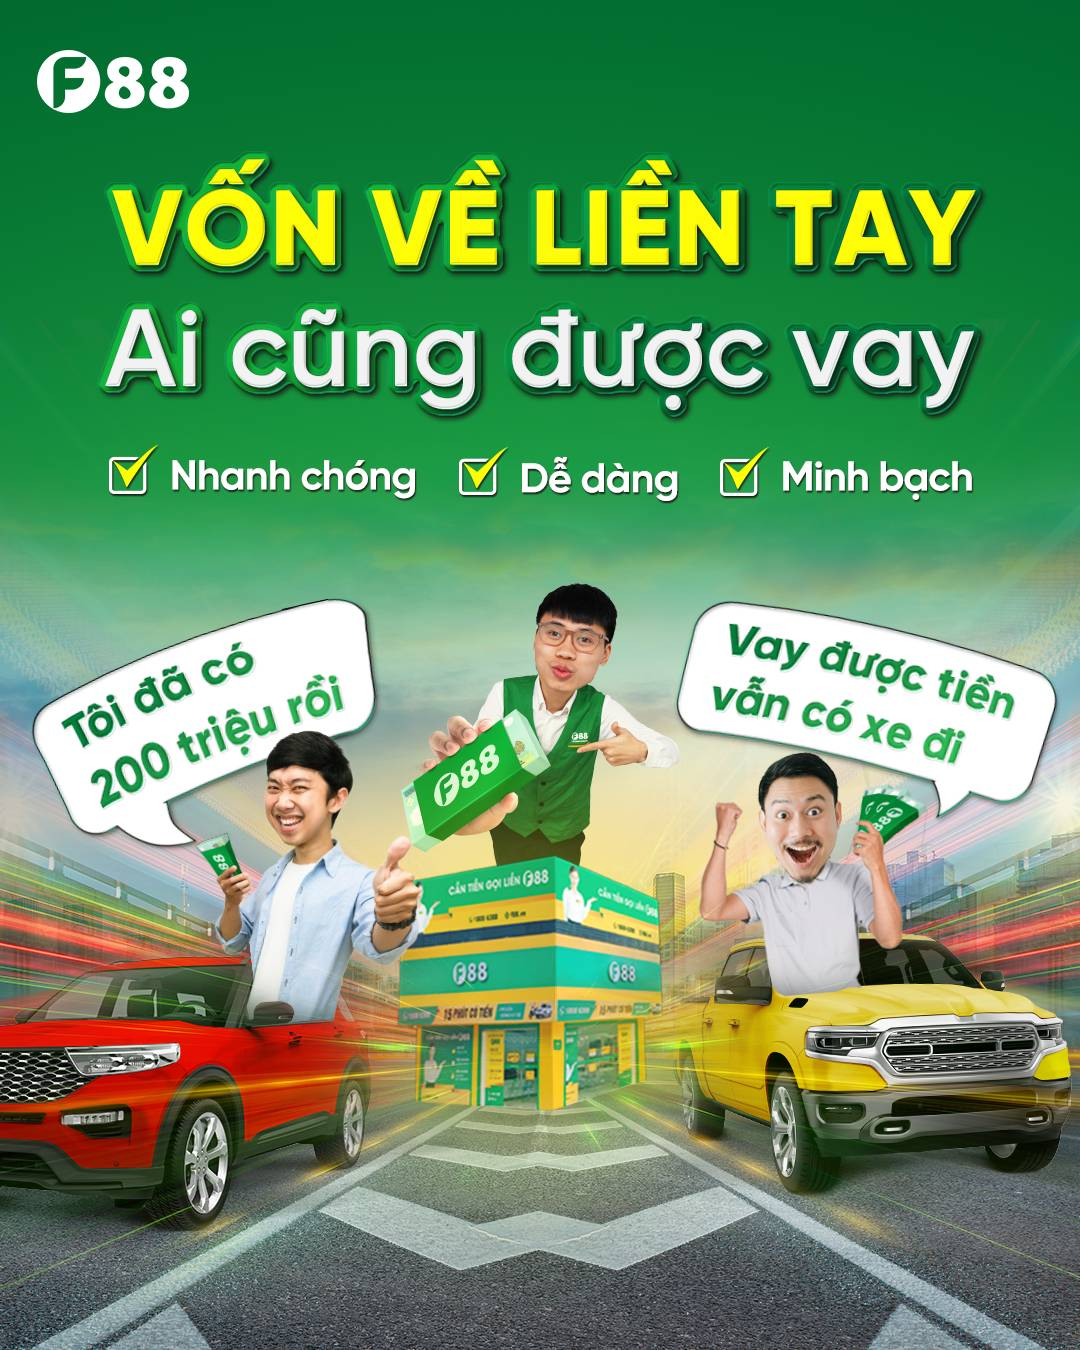 Vay tiền huyện Thanh Trì